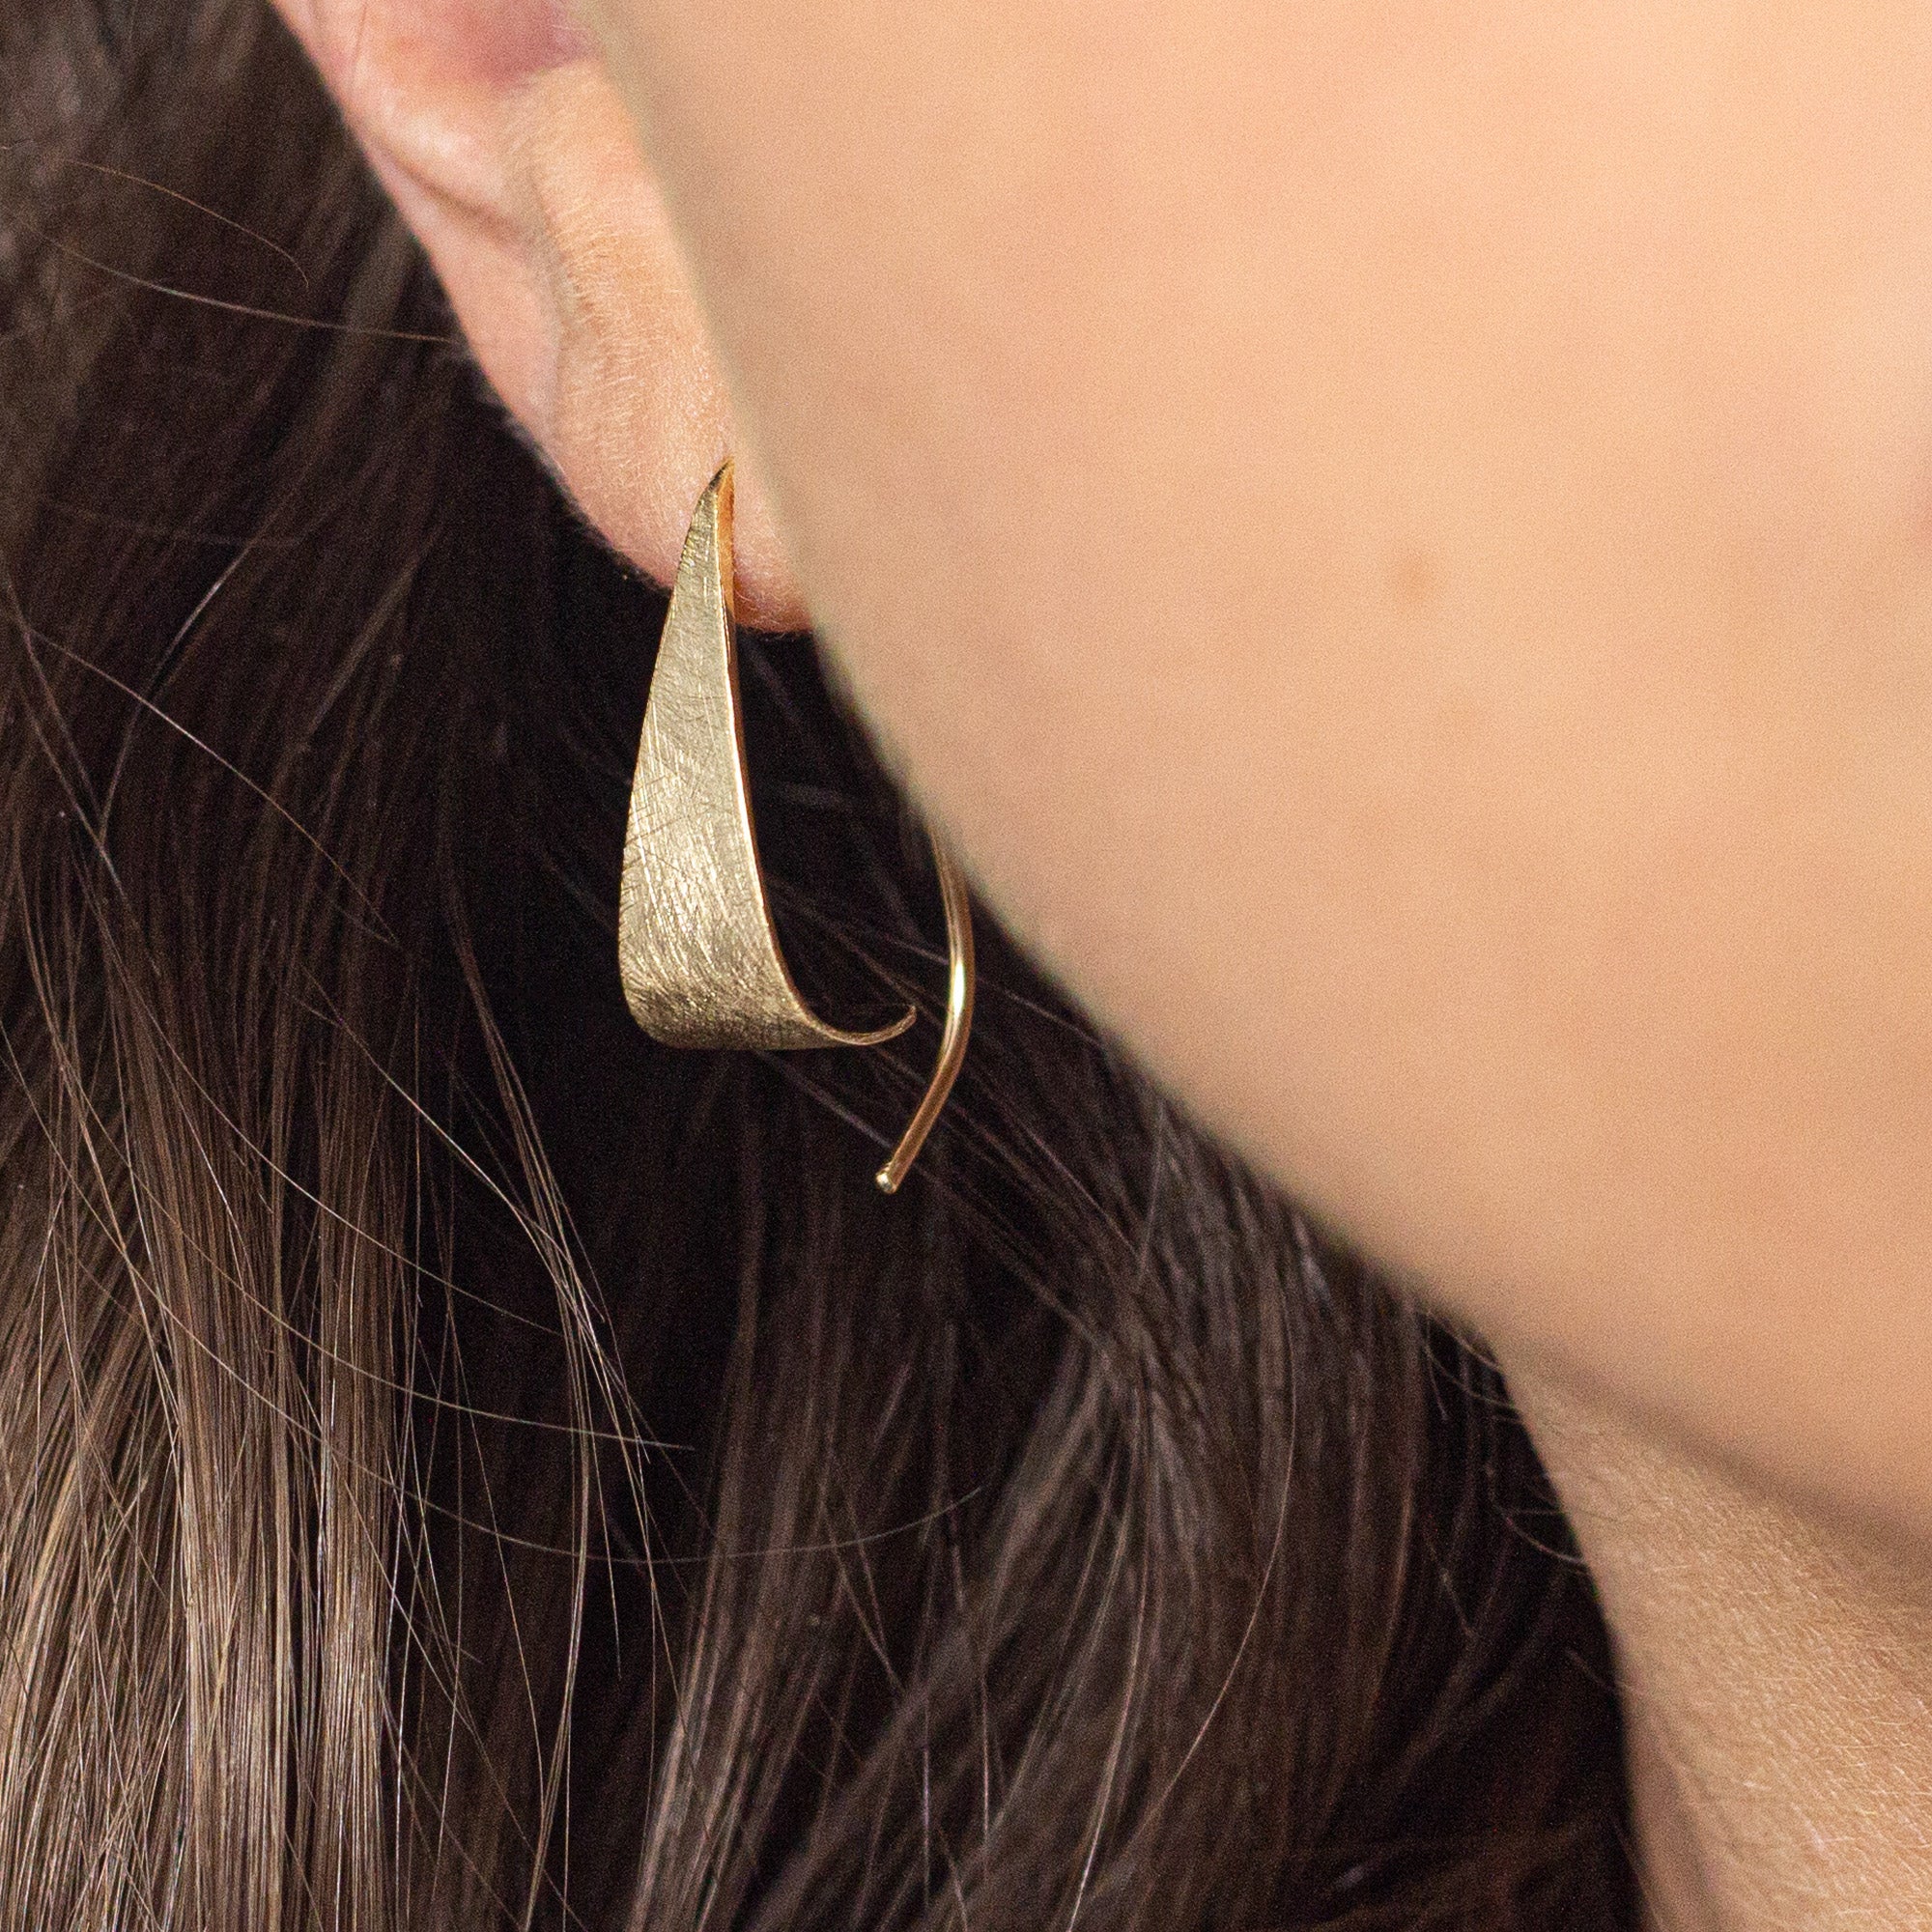 Hanover - 14k gold earrings